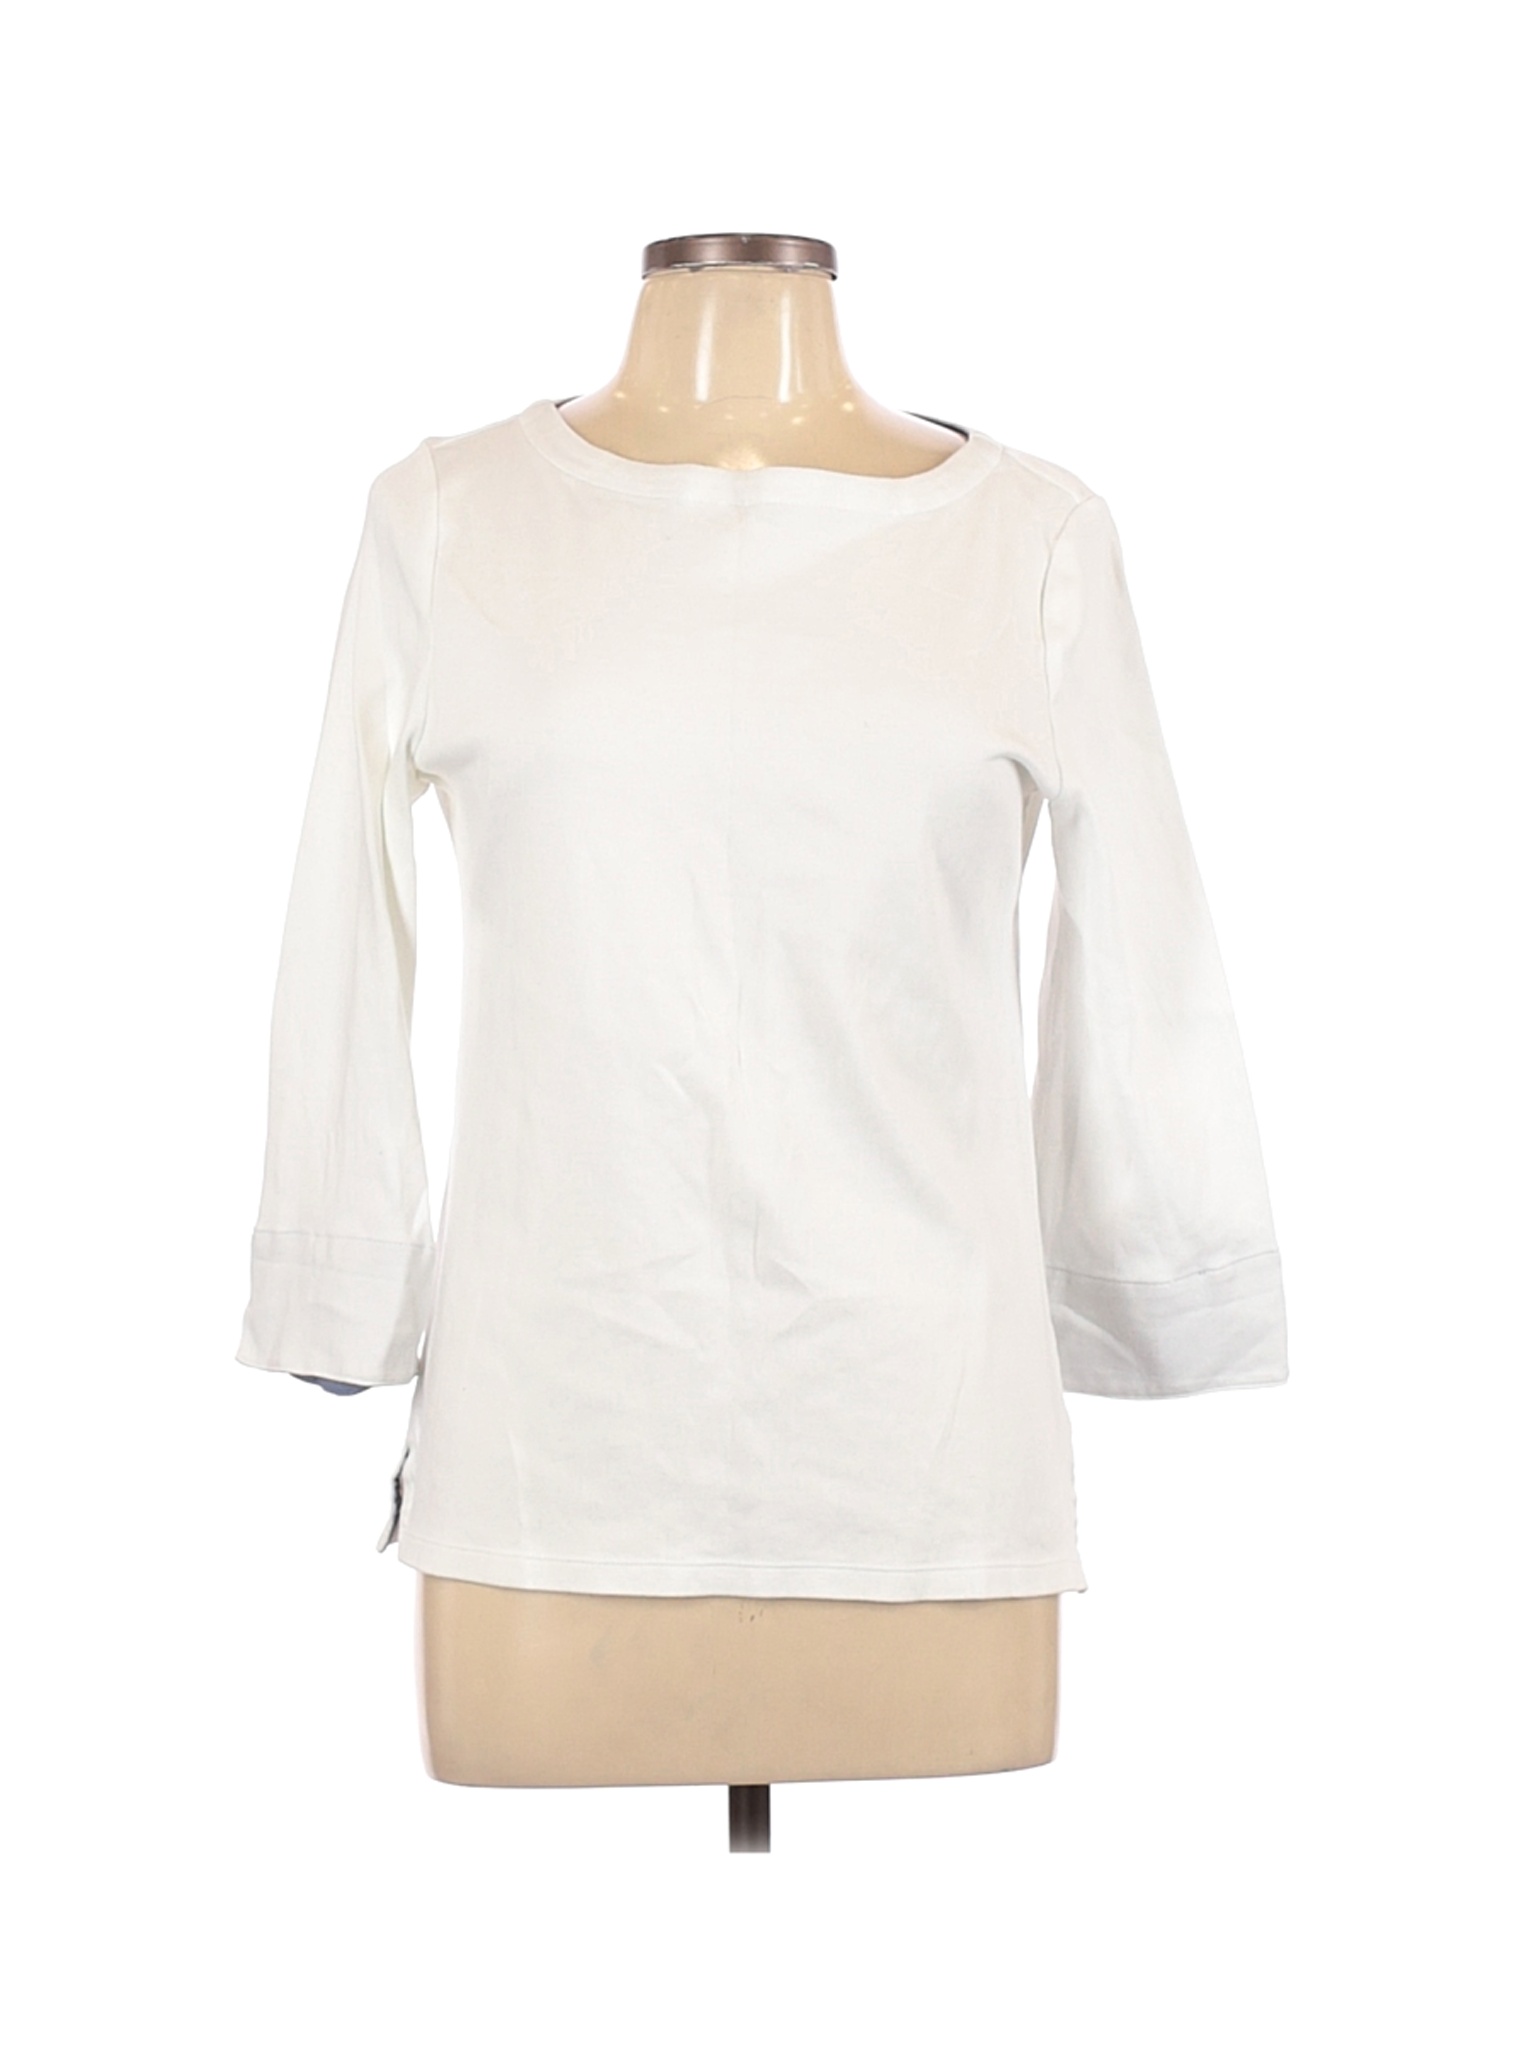 Nautica Women White 3/4 Sleeve T-Shirt L | eBay